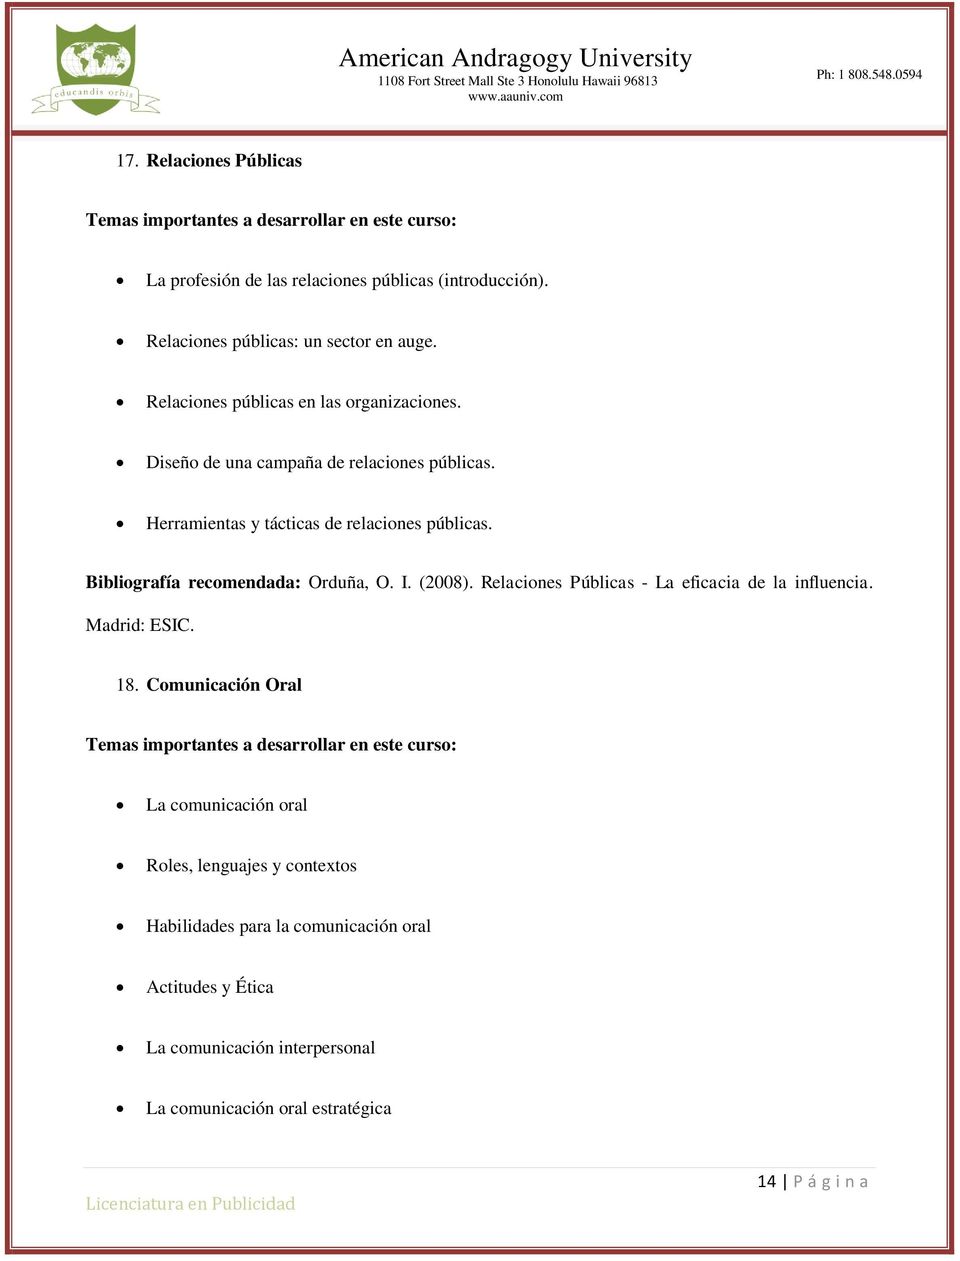 Bibliografía recomendada: Orduña, O. I. (2008). Relaciones Públicas - La eficacia de la influencia. Madrid: ESIC. 18.